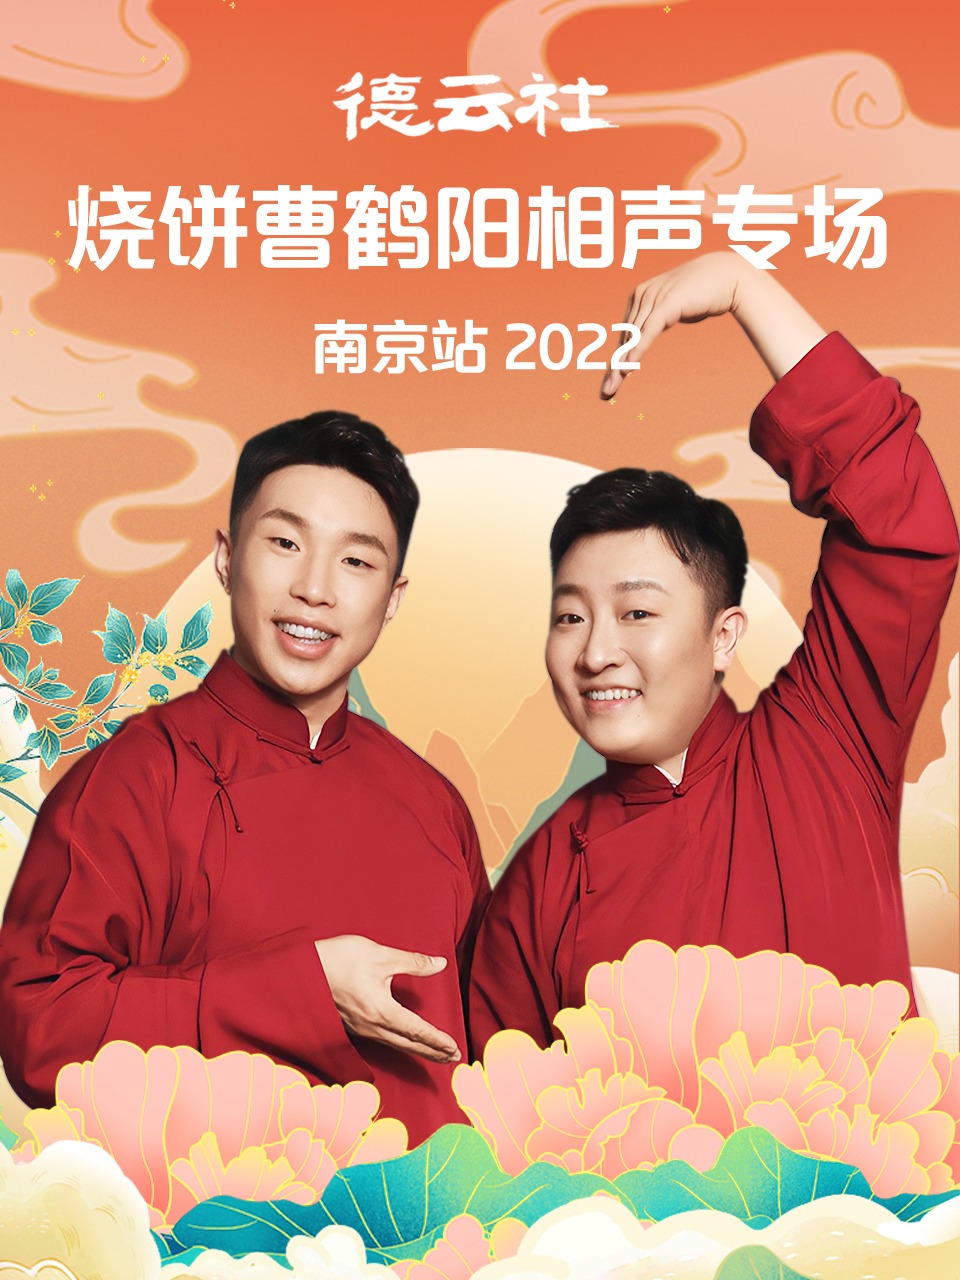 德云社烧饼曹鹤阳相声专场南京站 2022海报